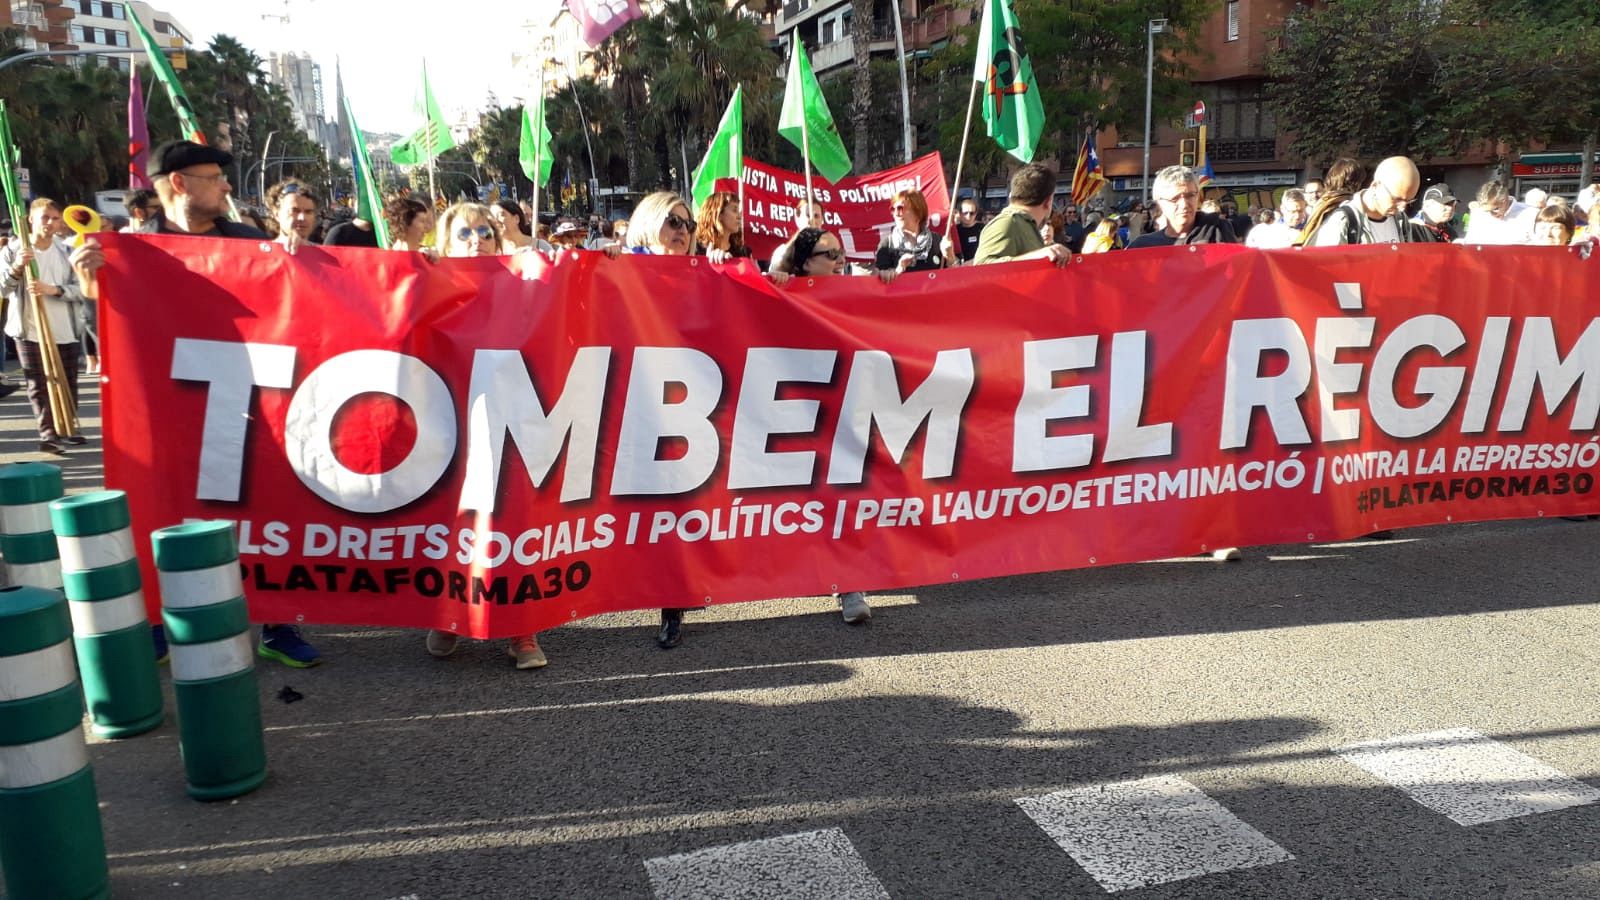 Cataluña: La Plataforma 3 de octubre convoca una manifestación "para tumbar el régimen" y "por la autodeterminación"